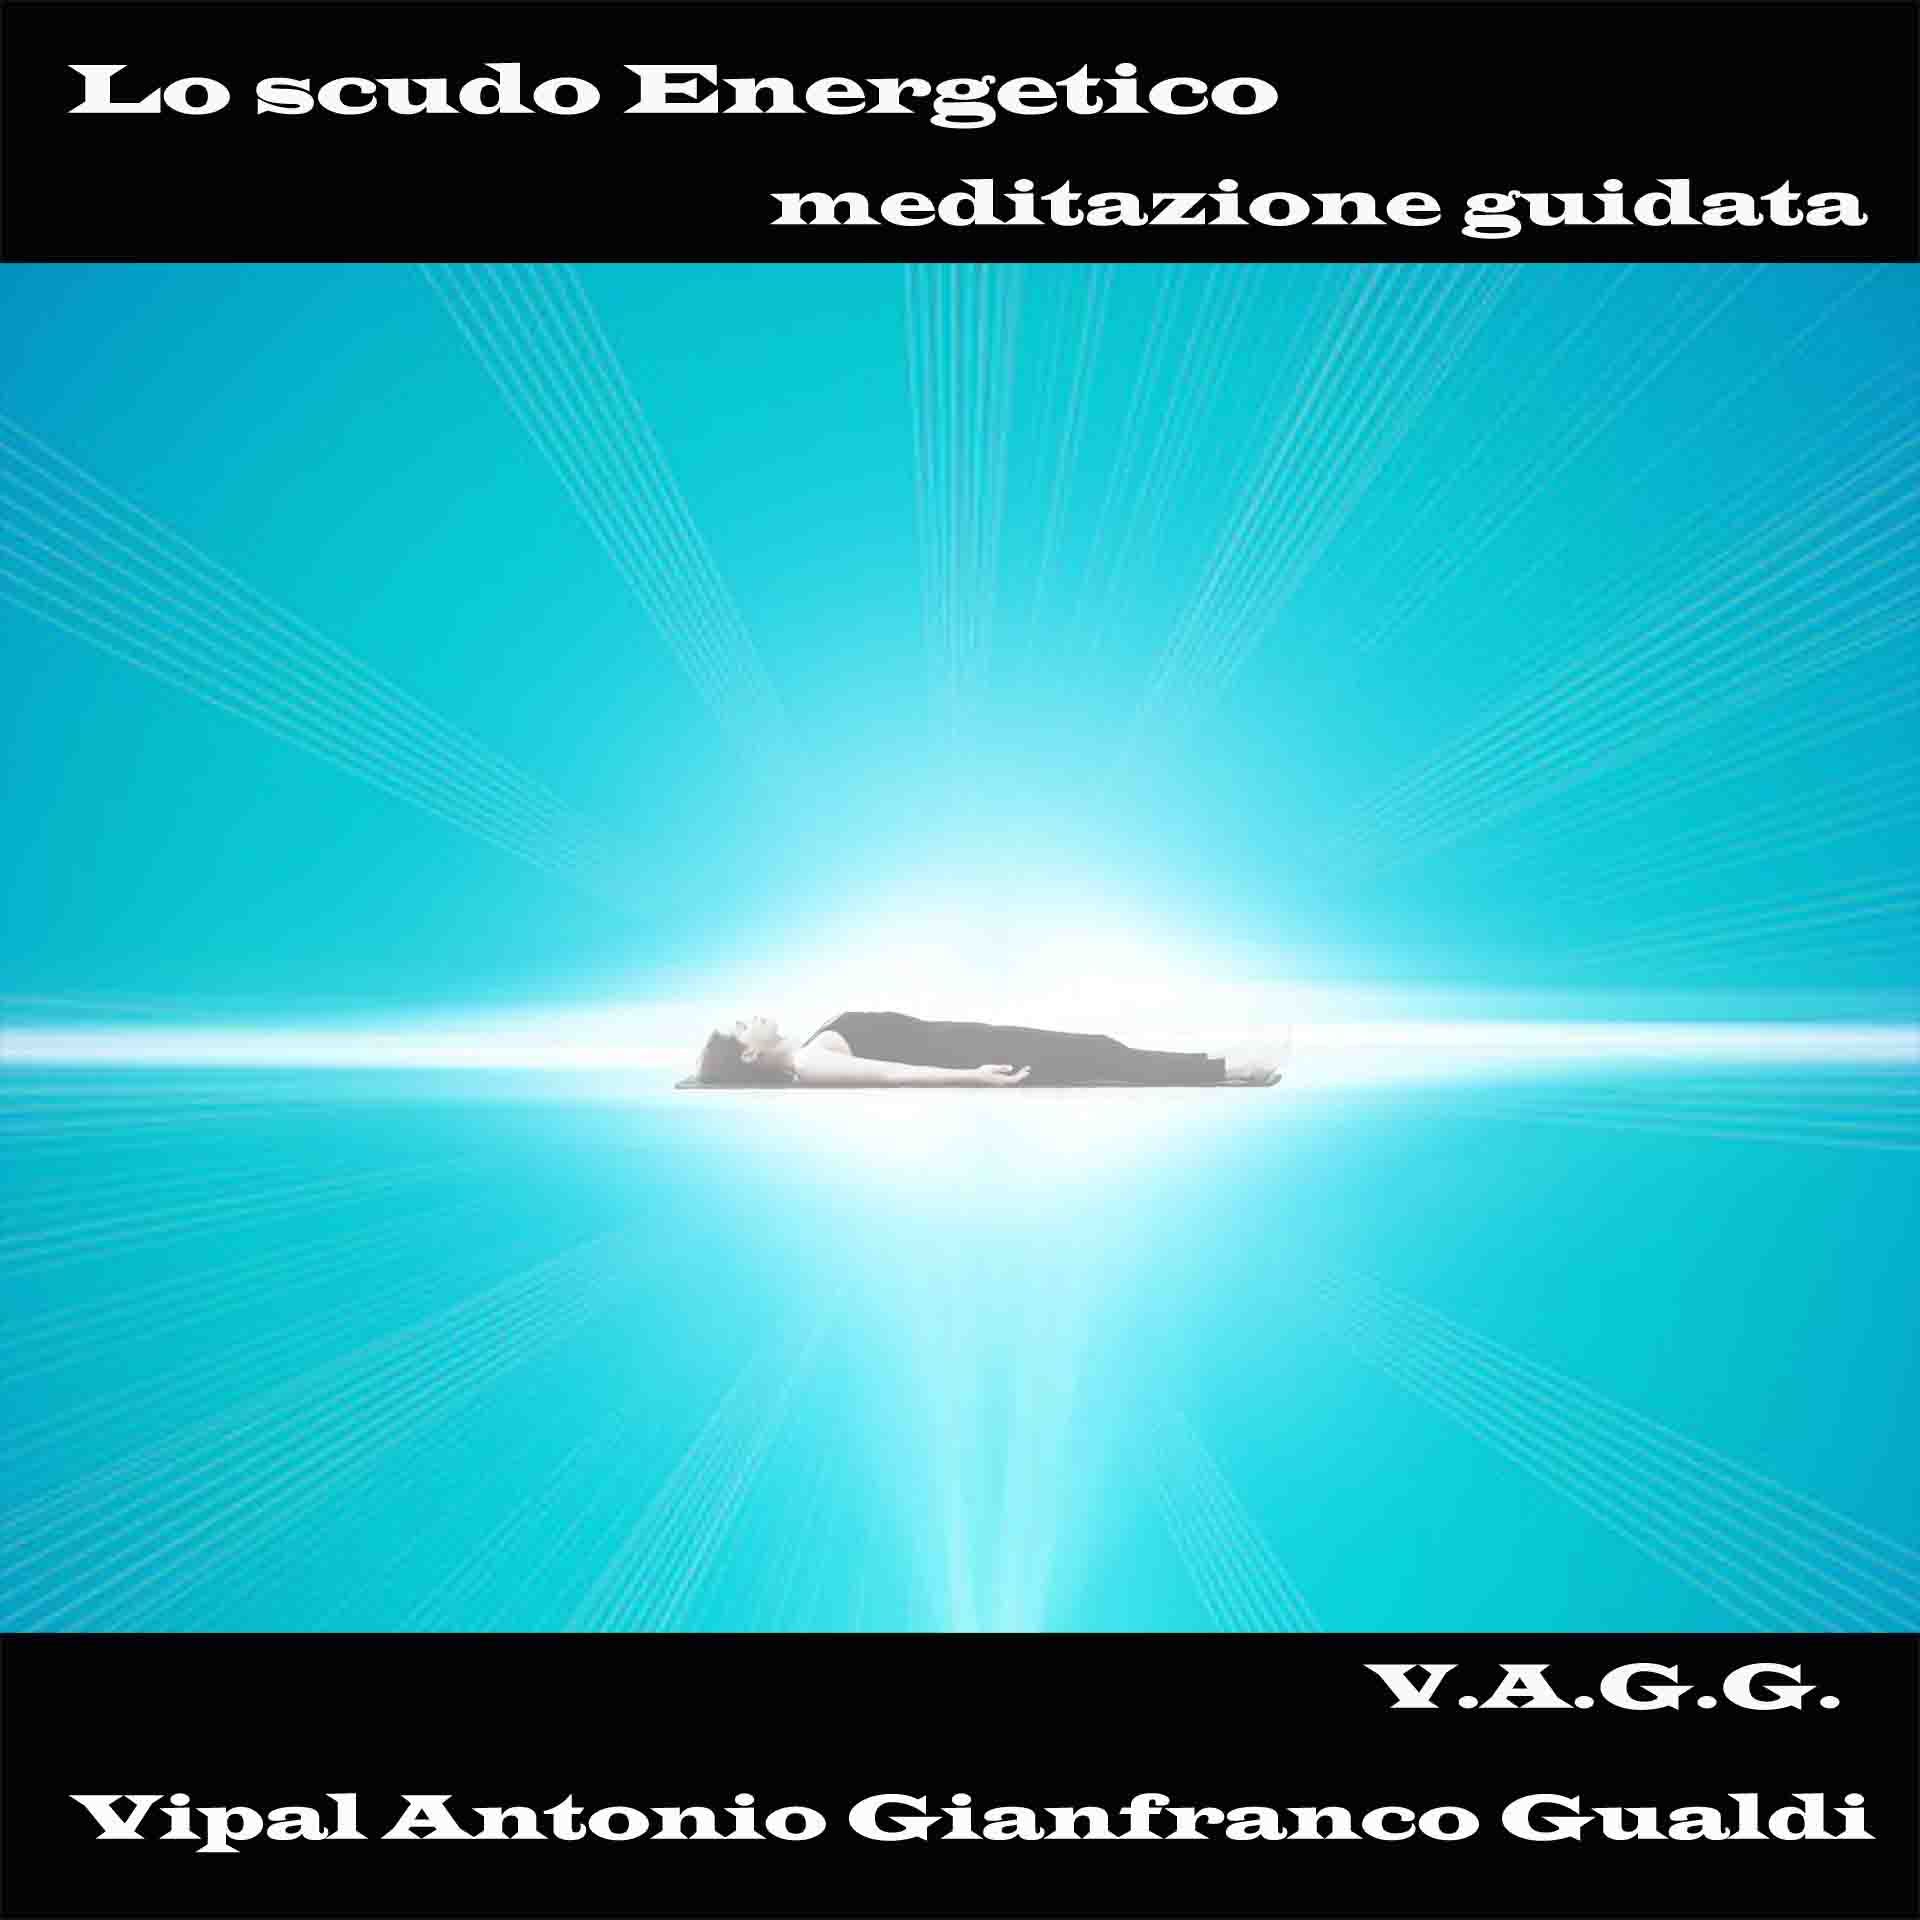 Lo scudo energetico meditazione guidata Vipal Antonio Gianfranco Gualdi